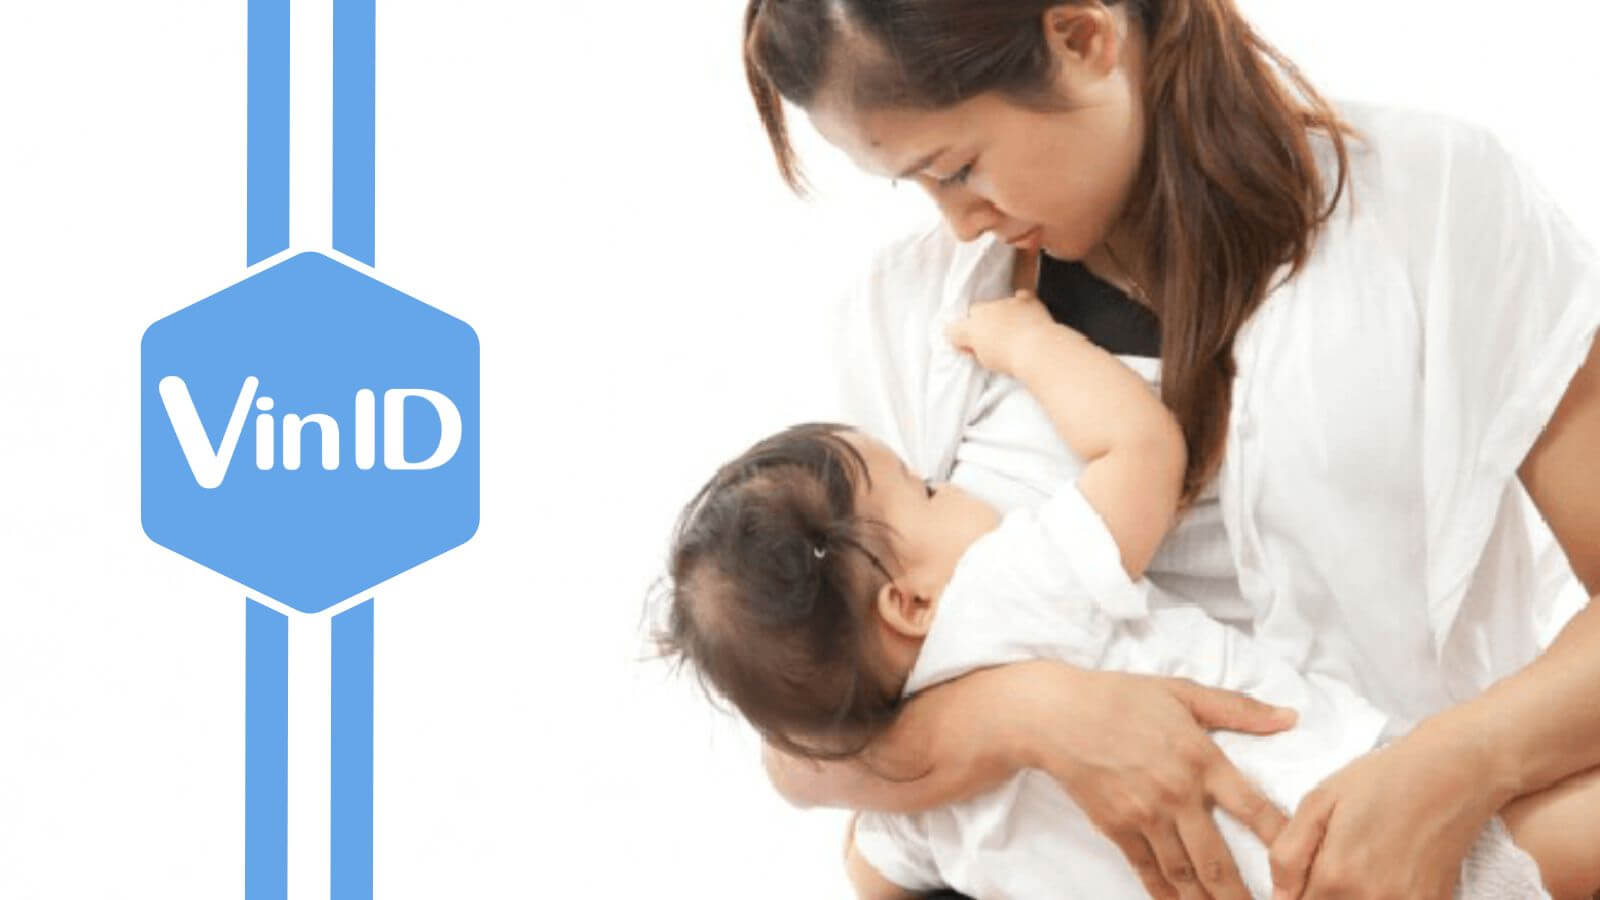 Bật mí cách cai sữa cho bé cực hiệu quả lại an toàn & khoa học cho mẹ bỉm sữa